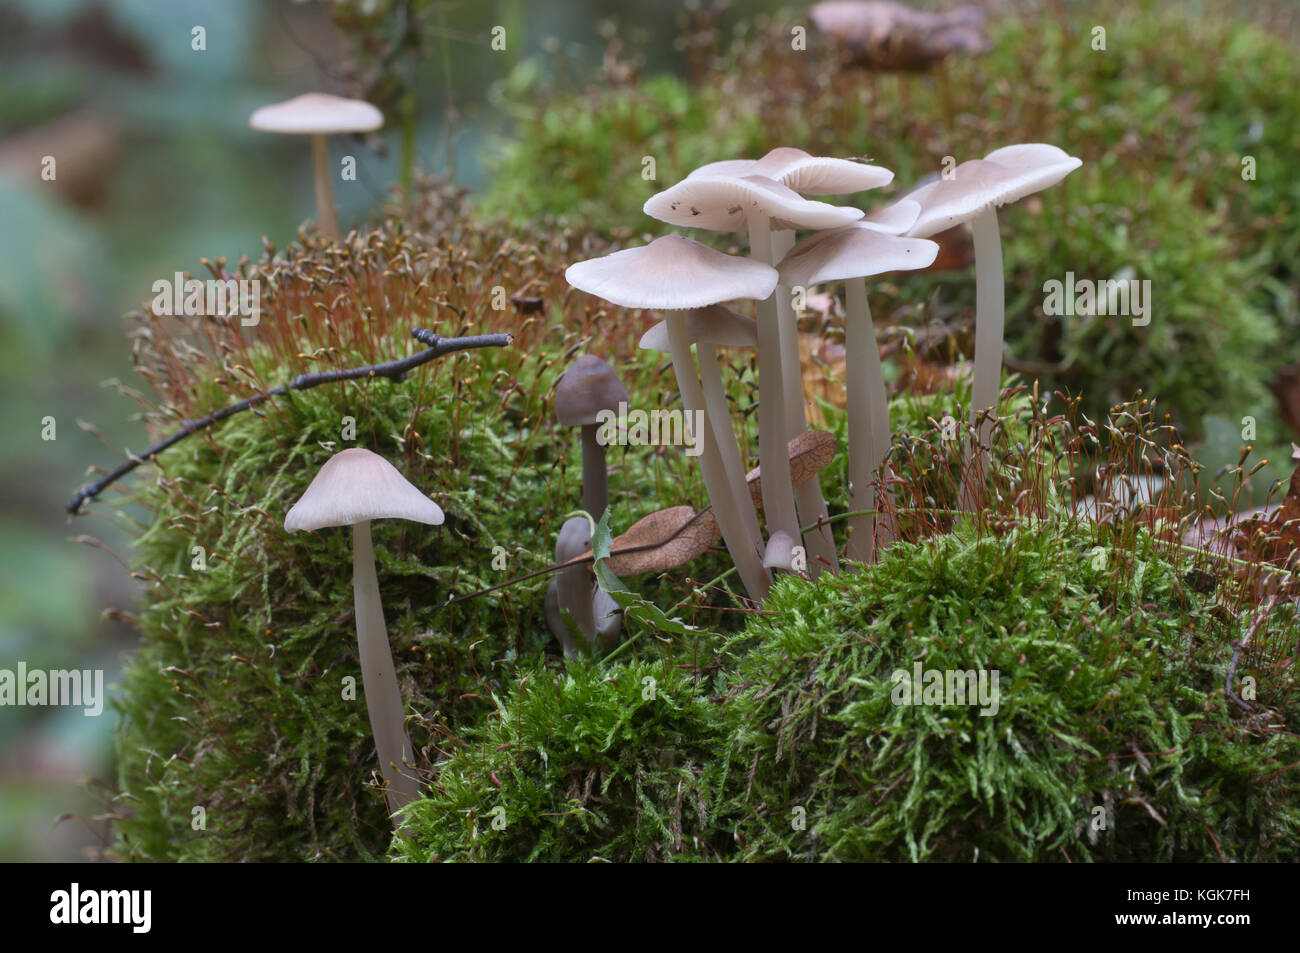 Mycena galericulata mushrooms on an old stump, closeup Stock Photo